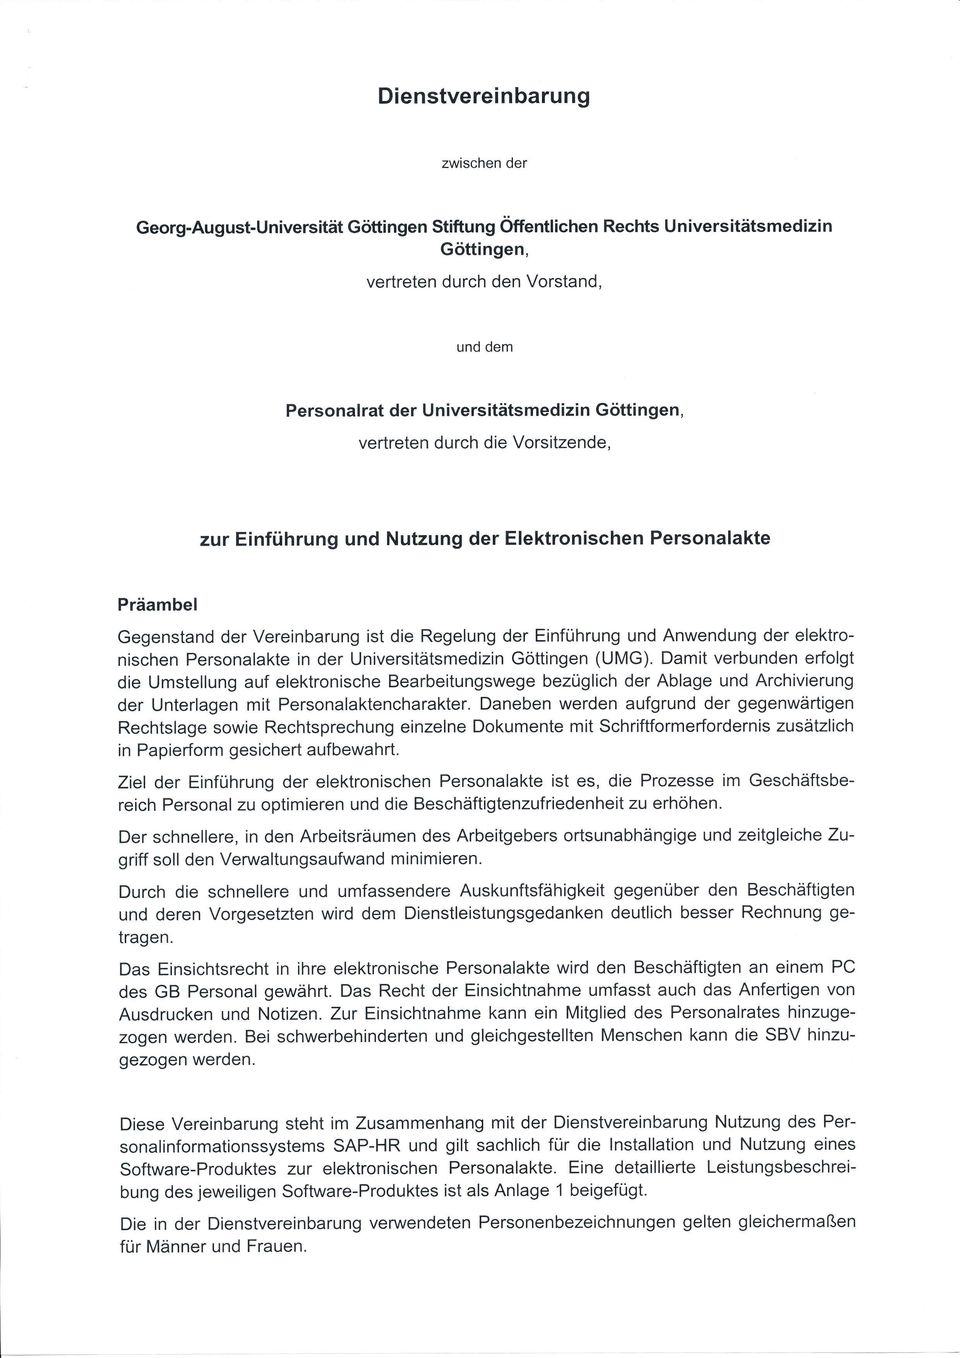 Anwendung der elektronischen Personalakte in der Universitätsmedizin Göttingen (UMG).